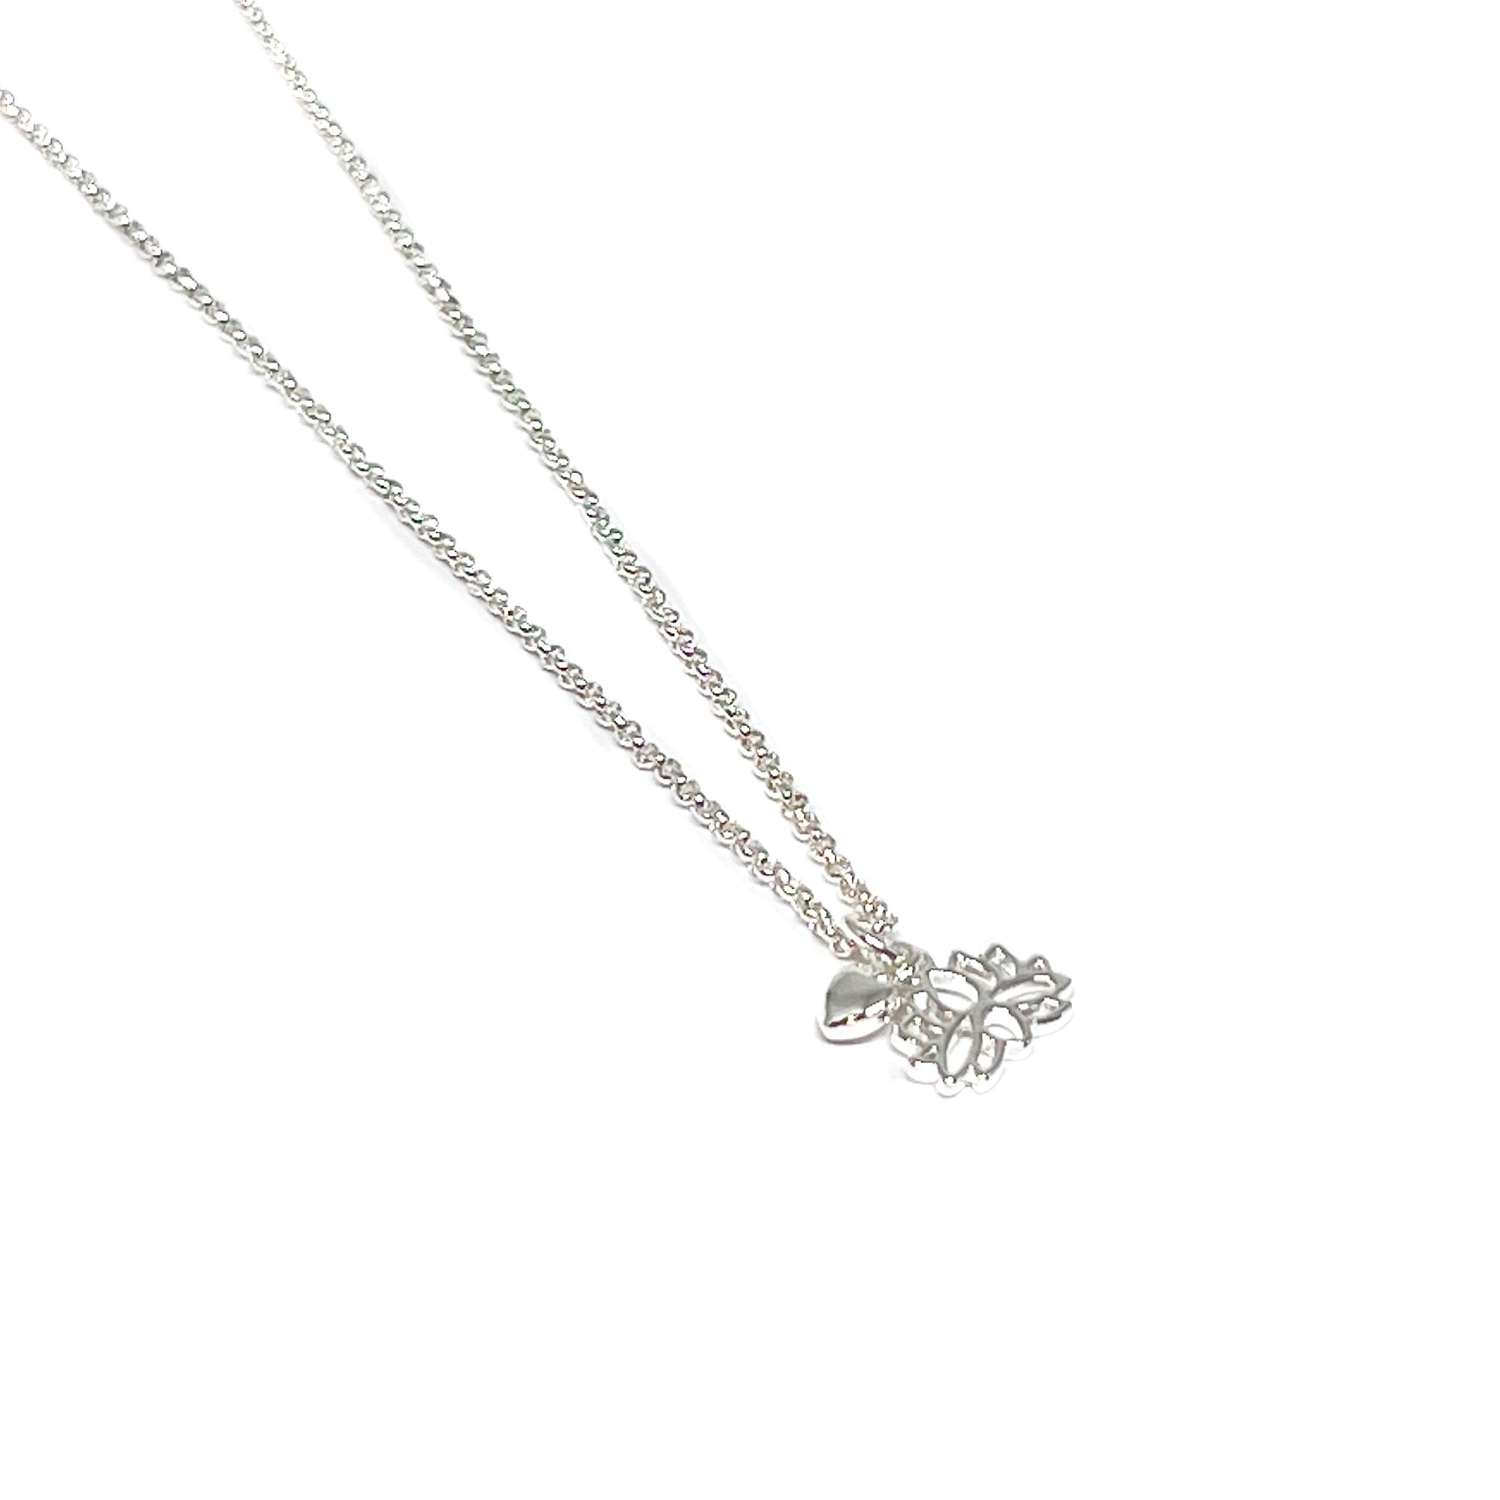 Indigo Lotus Flower Necklace - Silver